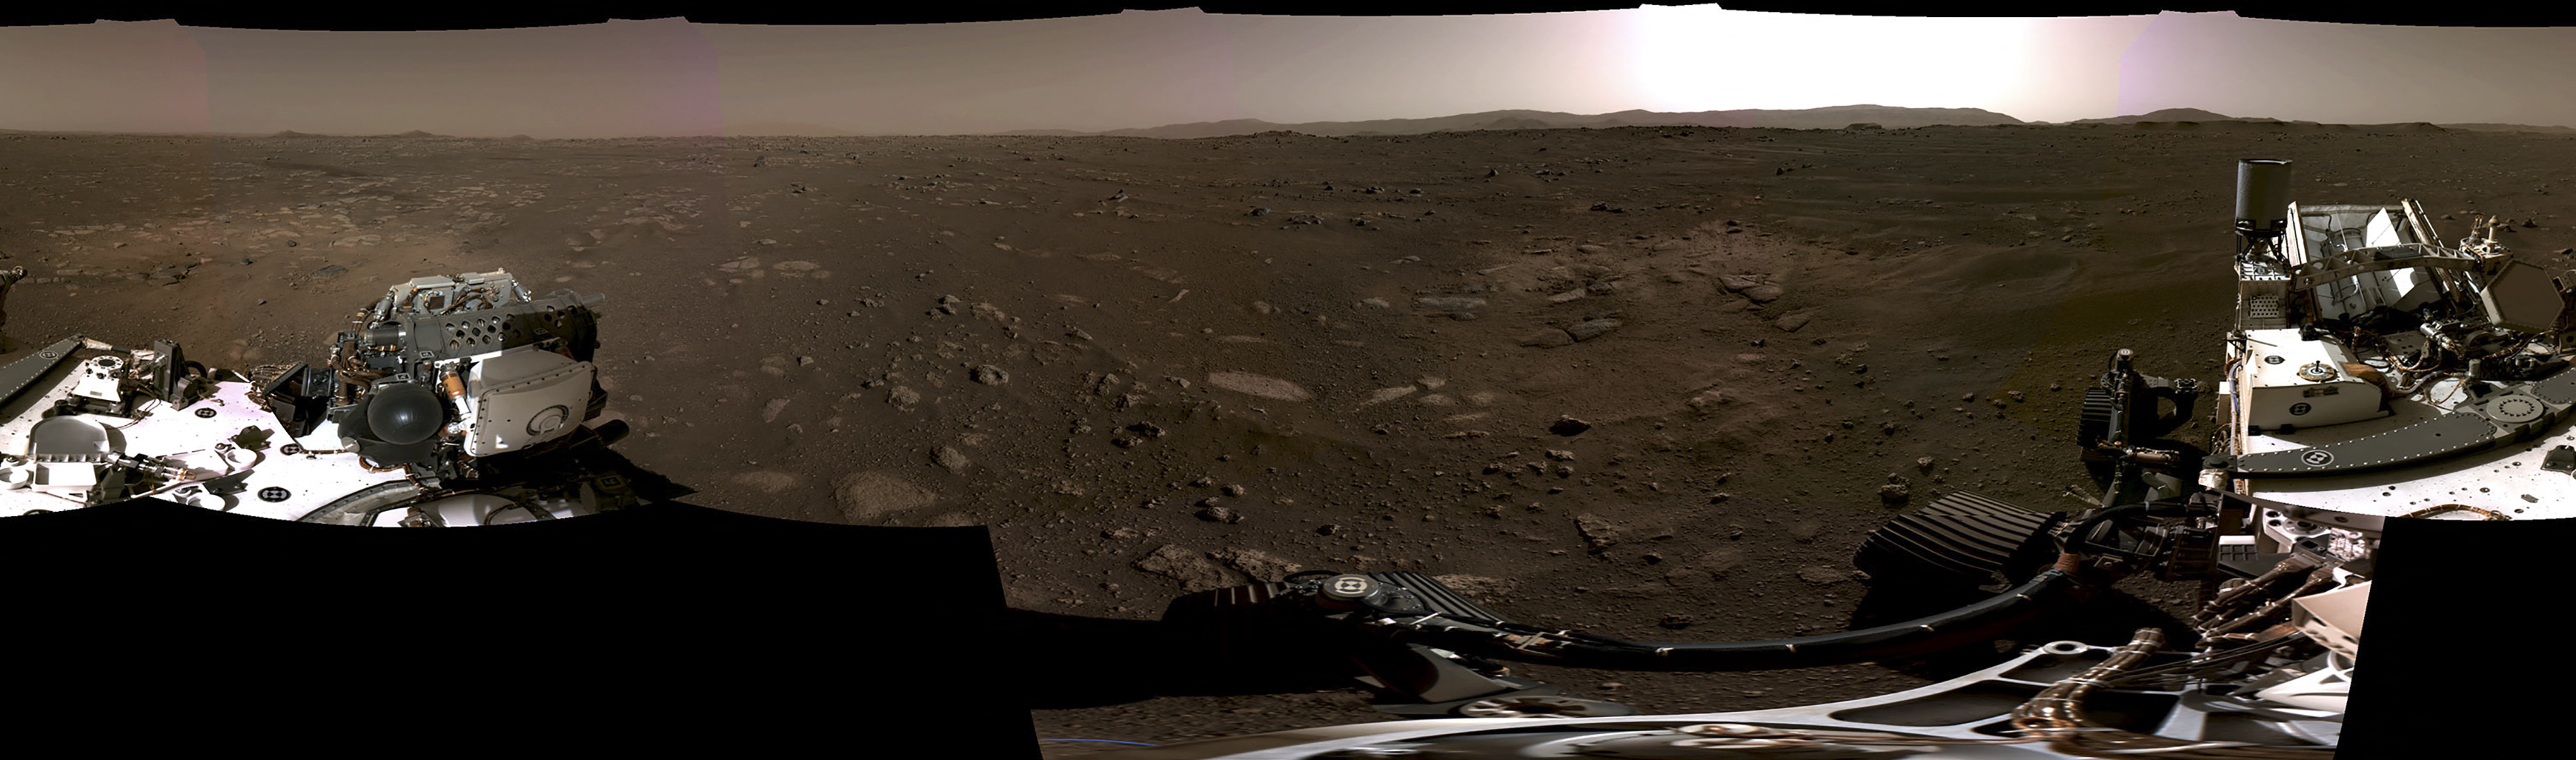 Panorámica de Marte desde el cráter Jézero, del rover Perseverance  -NASA 